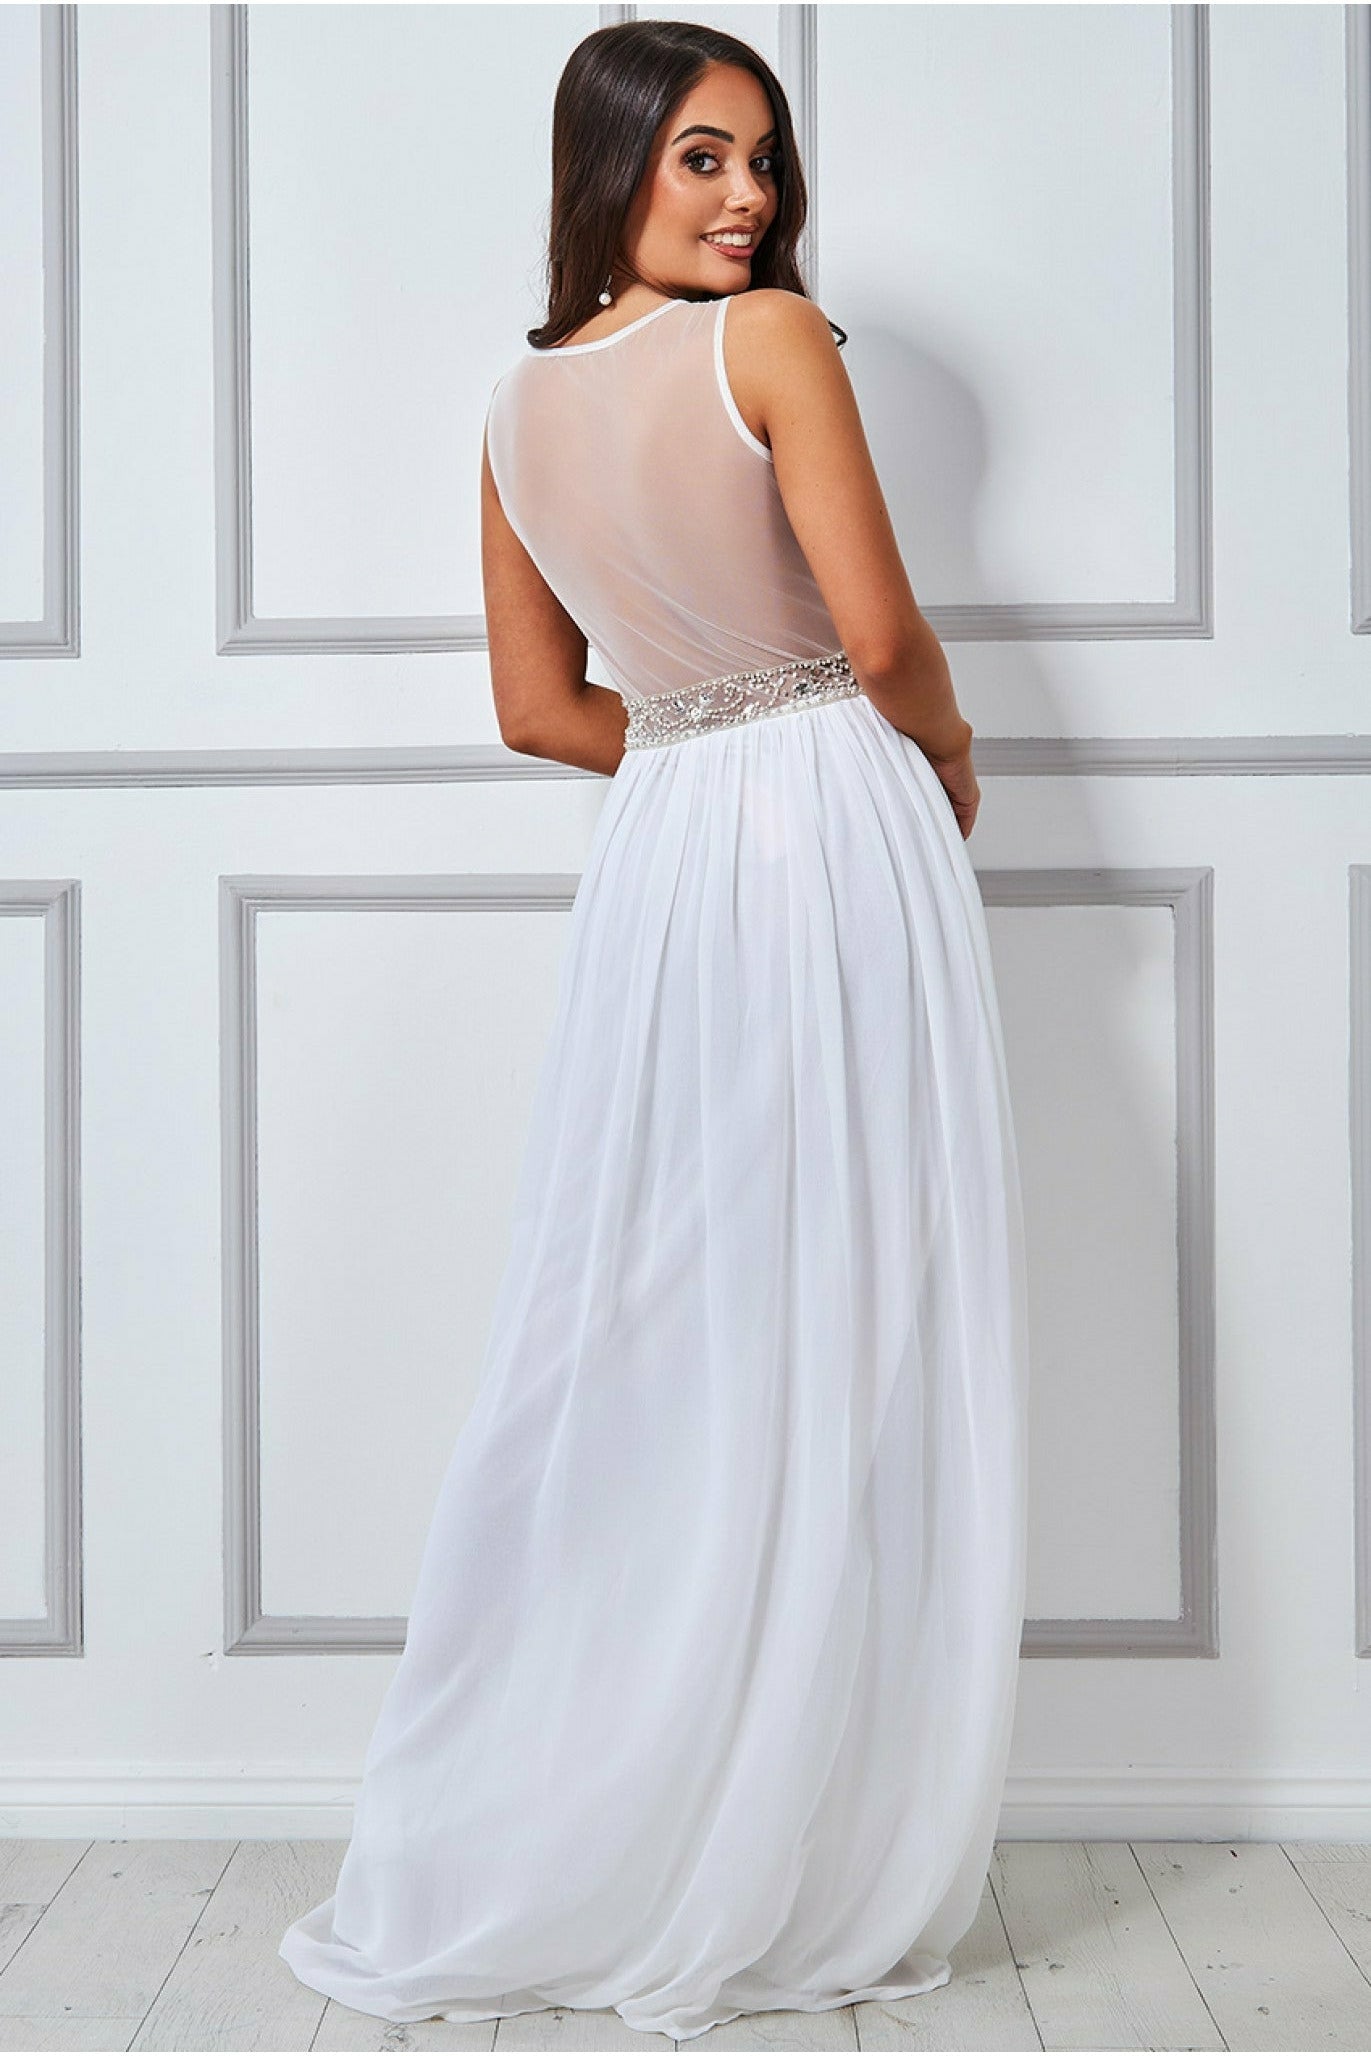 Embellished Chiffon Maxi Wedding Dress - Cream DR1207W